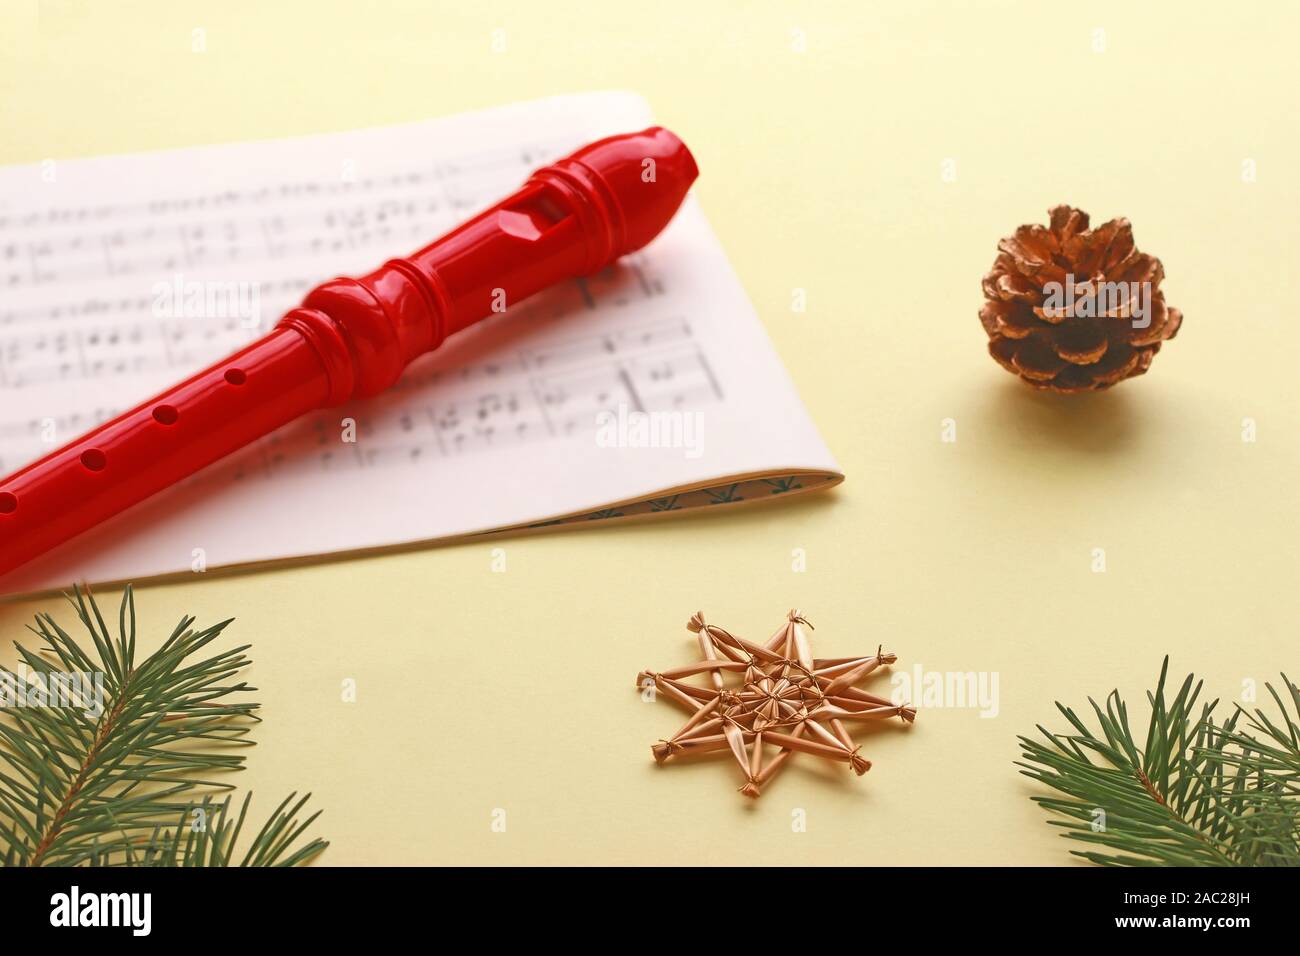 Noël arrière-plan jaune avec un enregistreur rouge posé sur une musique en feuilles, de pommes de pin, de paille et d'étoiles Banque D'Images